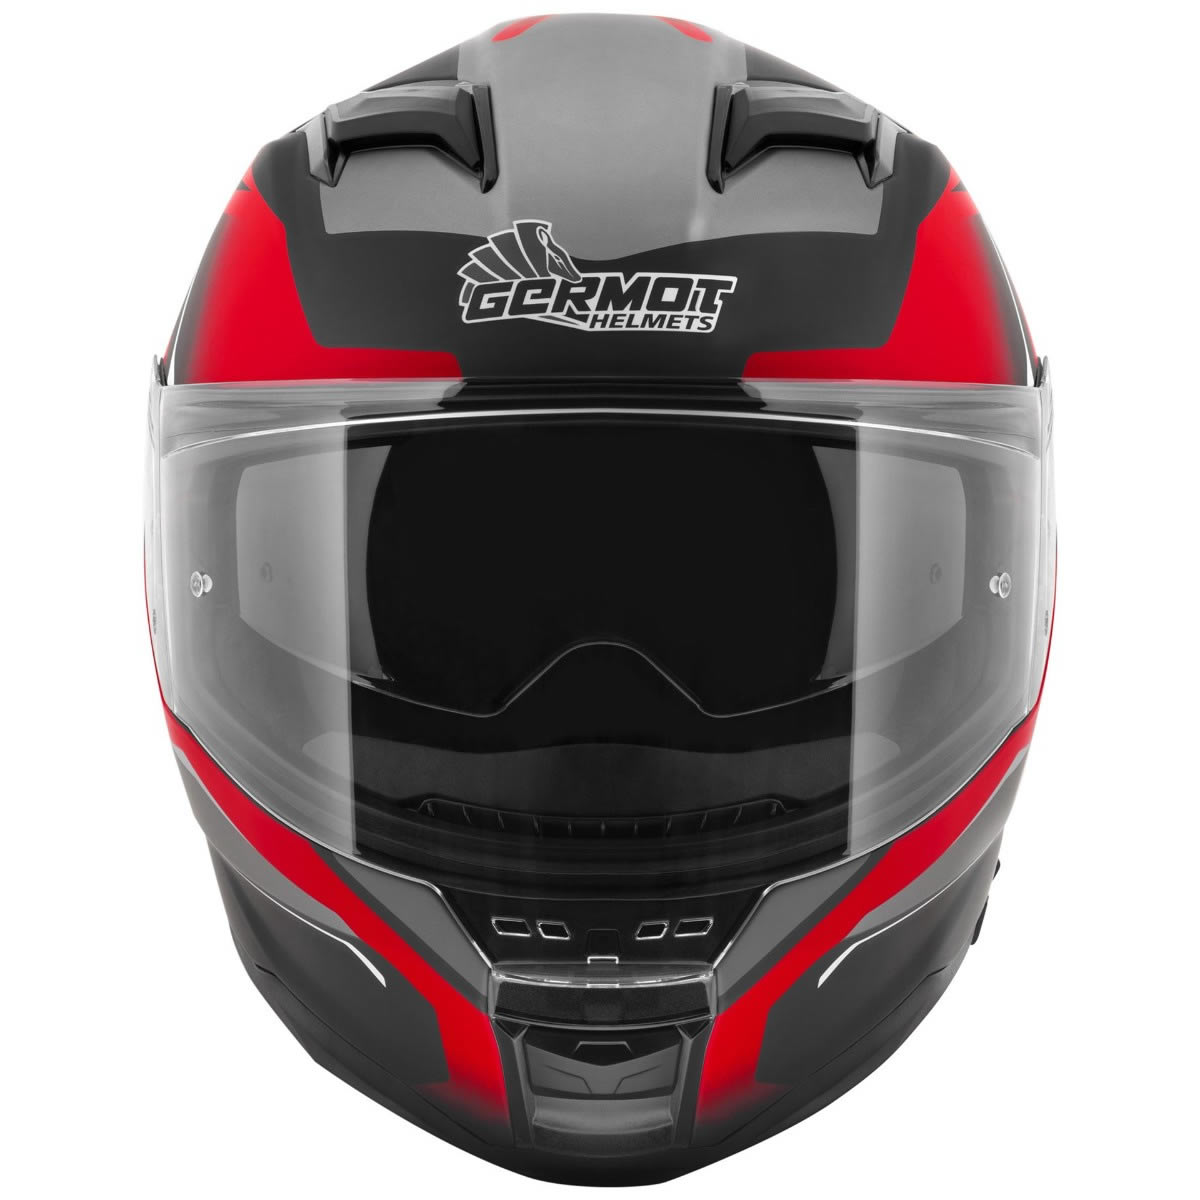 Germot GM 350 Helm, schwarz-rot matt